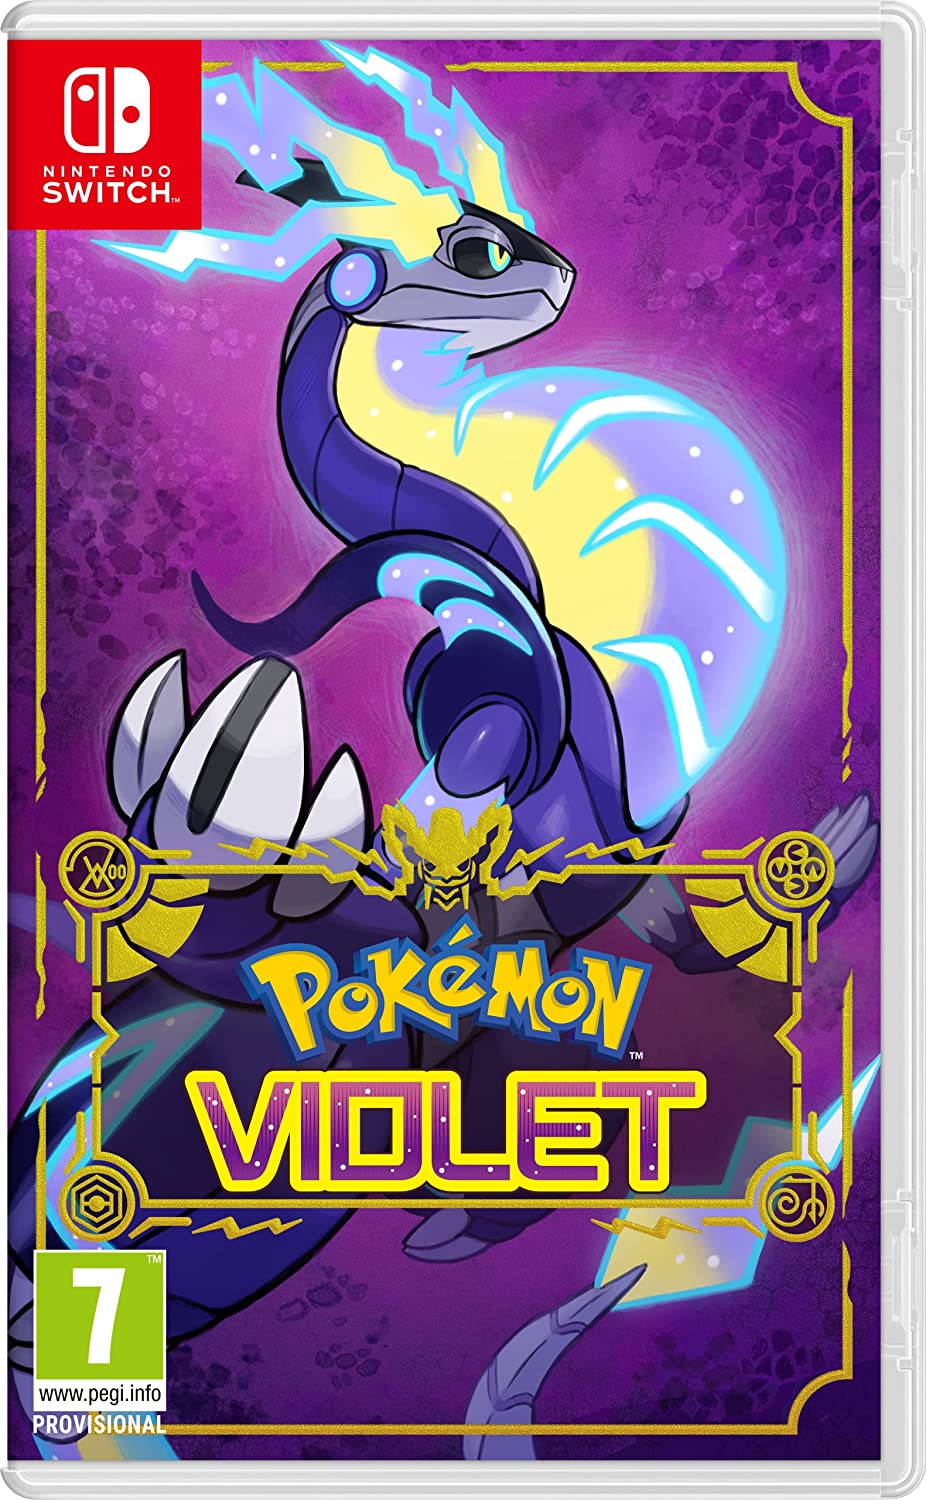 Nintendo Switch - Model OLED Pokémon Scarlet a Violet Edition + Pokémon Violet 